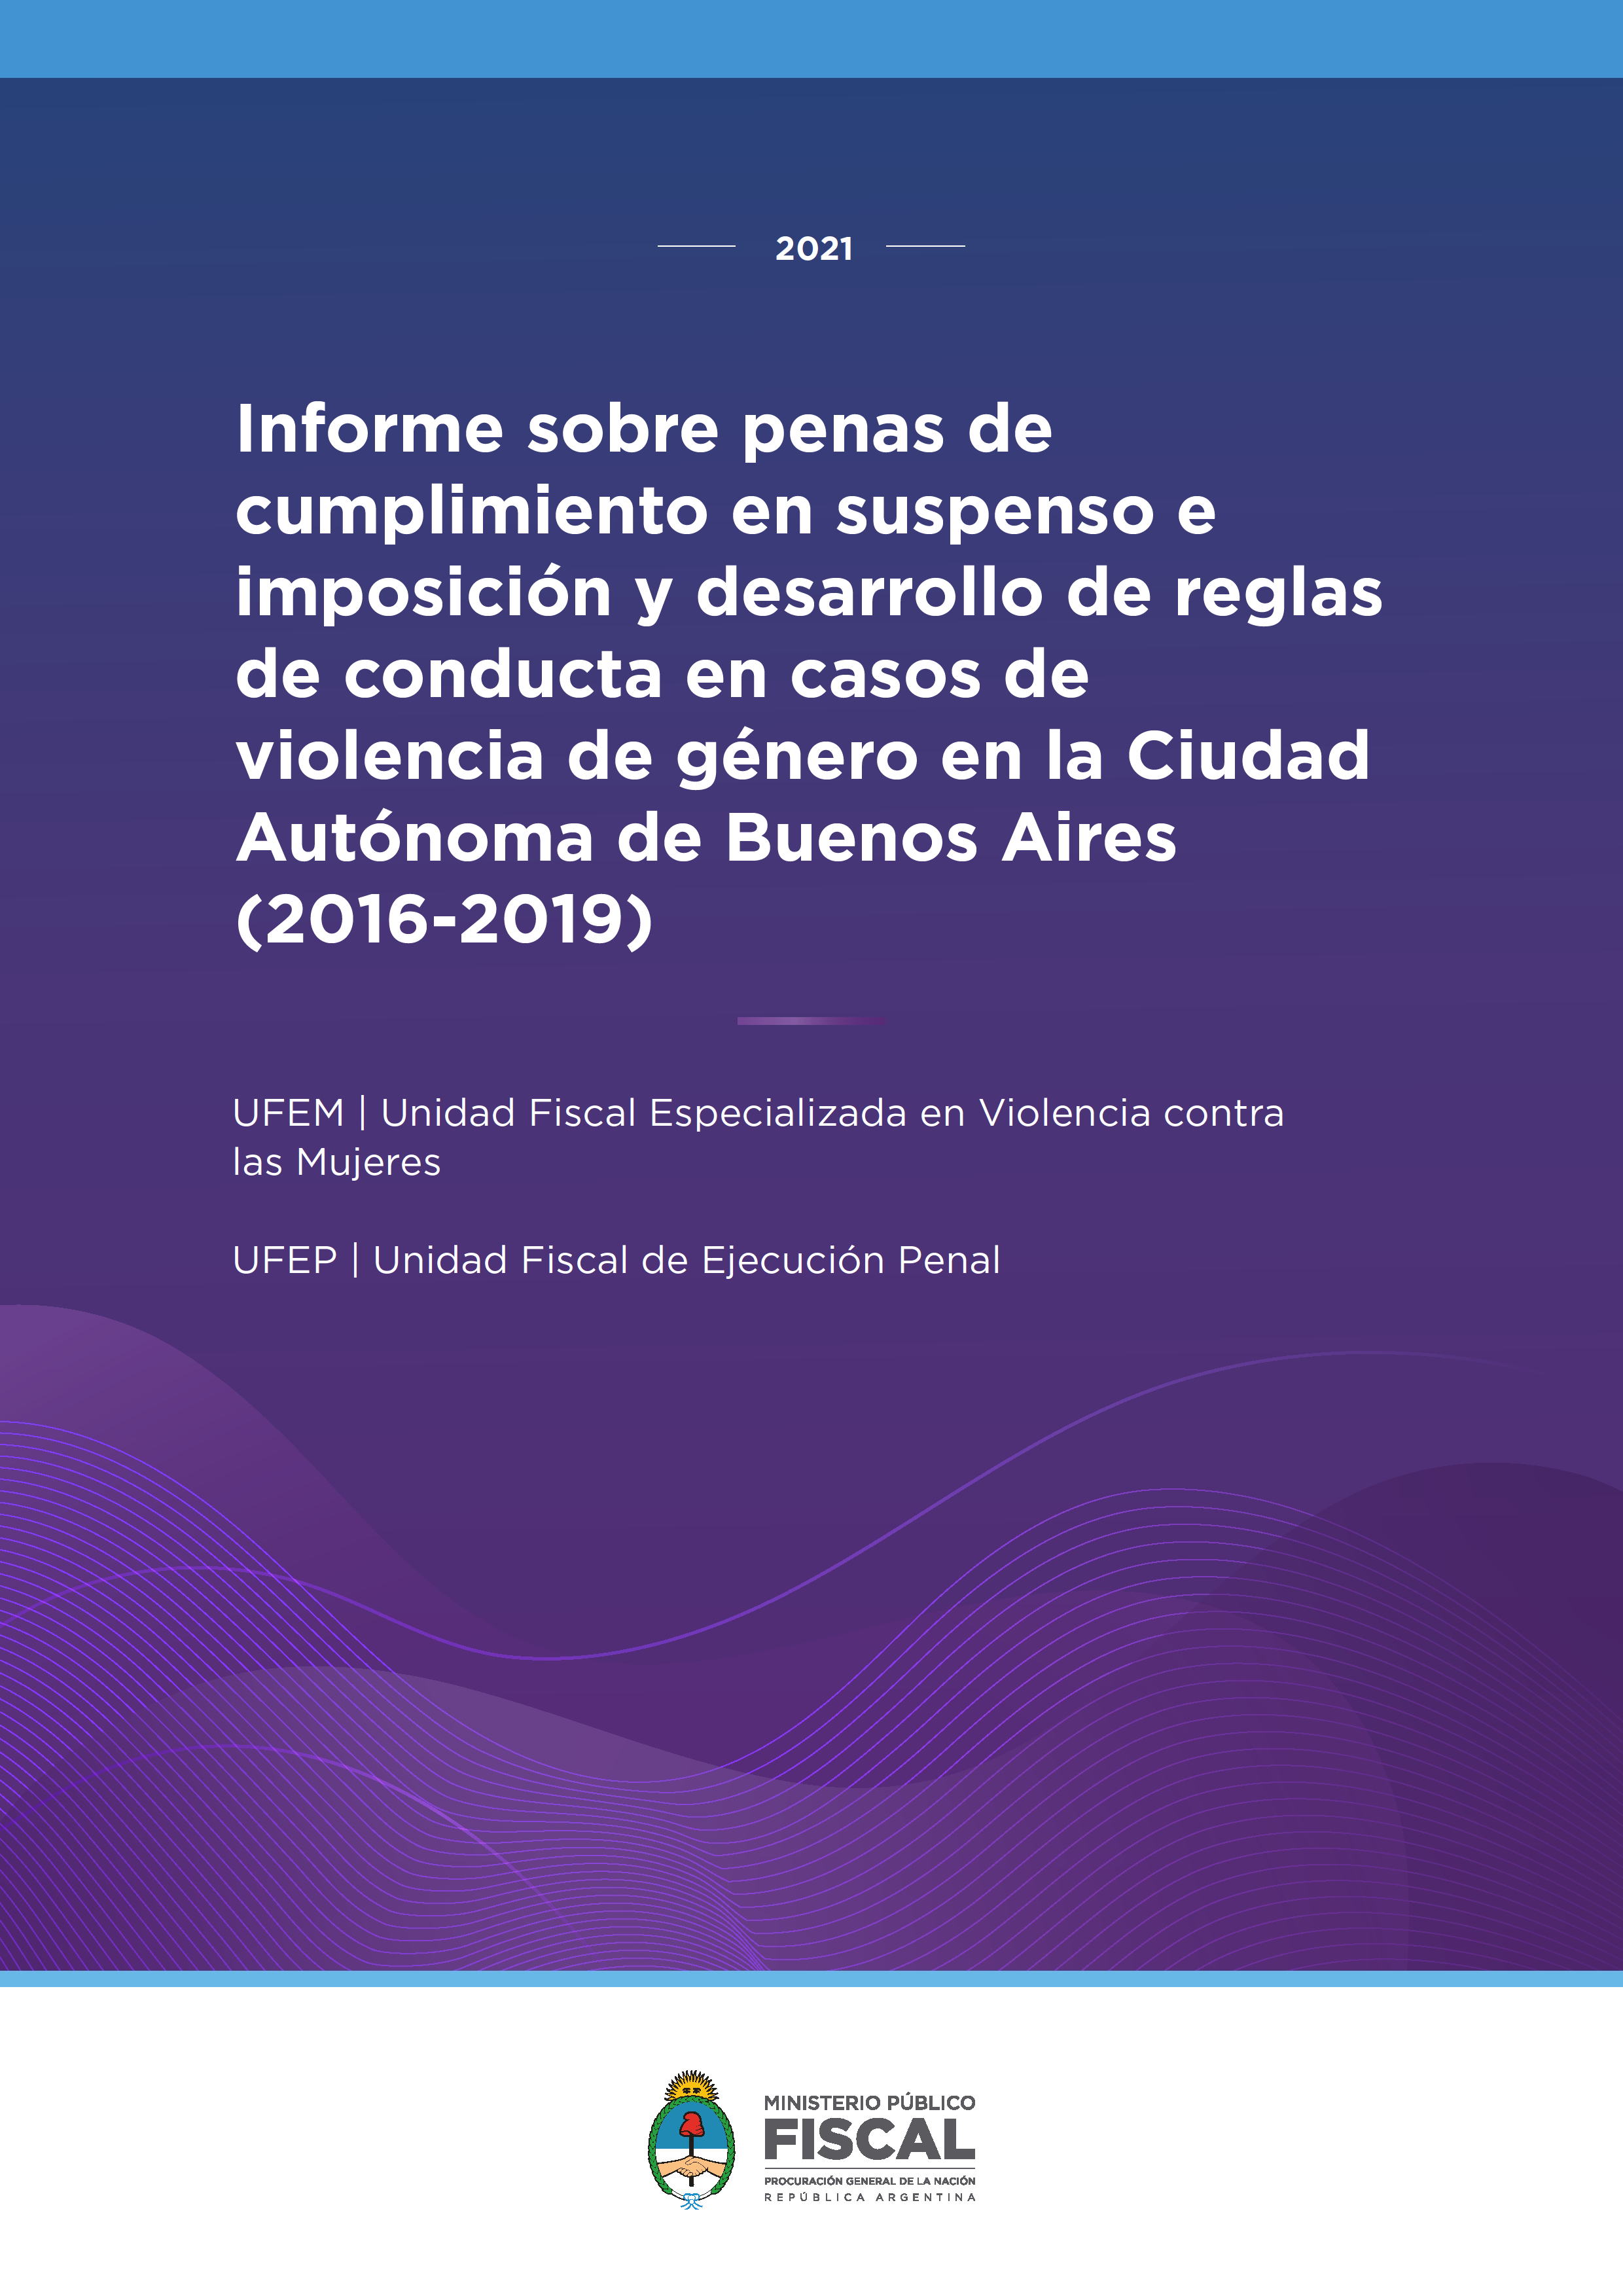 Informe sobre penas de cumplimiento en suspenso e imposición y desarrollo de reglas de conducta en casos de violencia de género en la Ciudad Autónoma de Buenos Aires